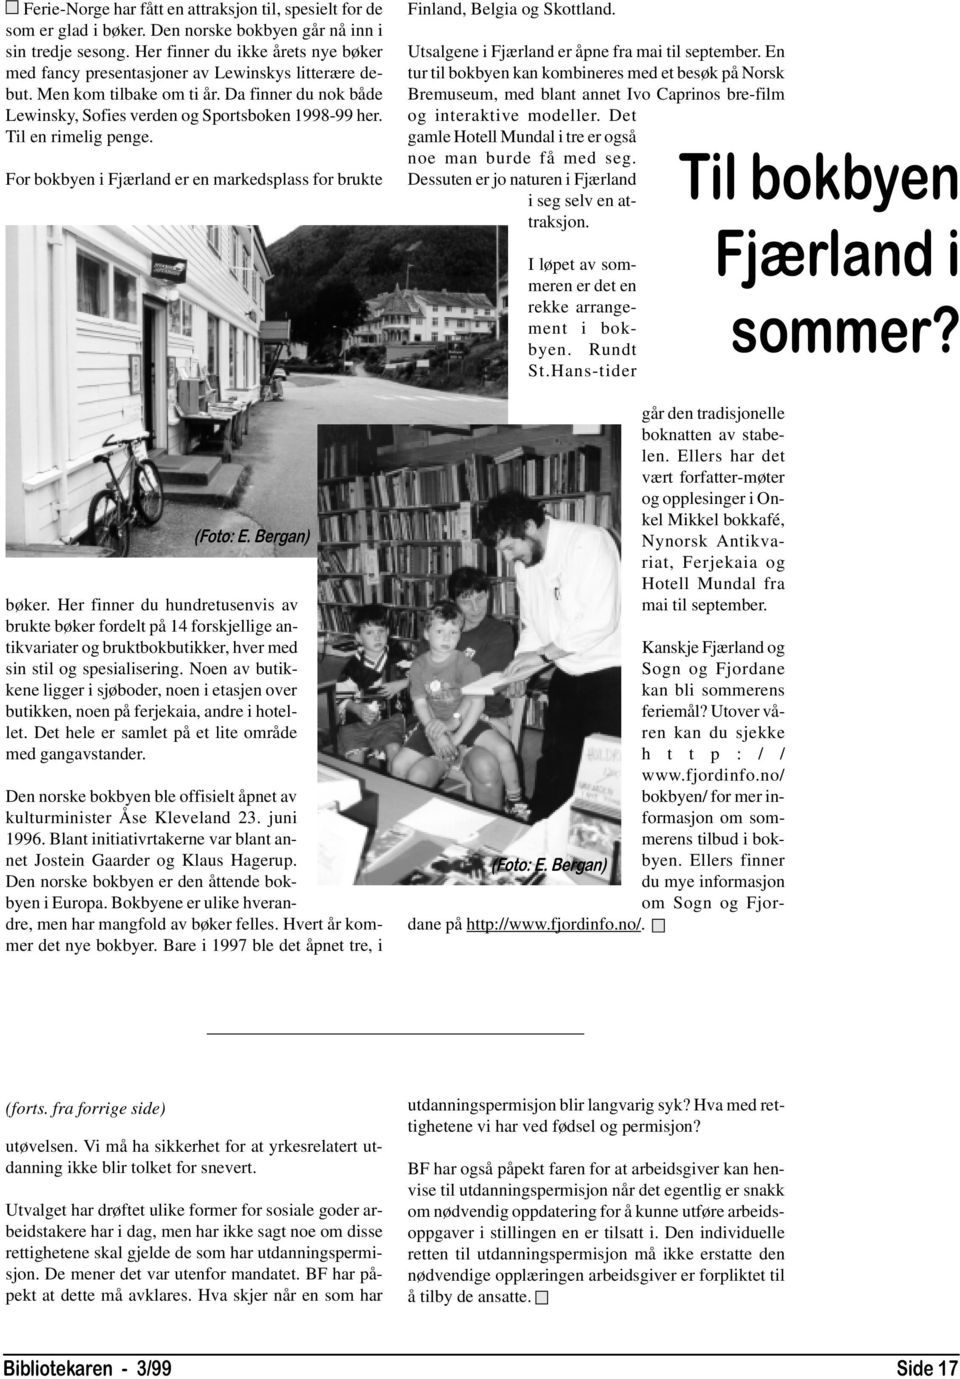 Til en rimelig penge. For bokbyen i Fjærland er en markedsplass for brukte (Foto: E. Bergan) bøker.